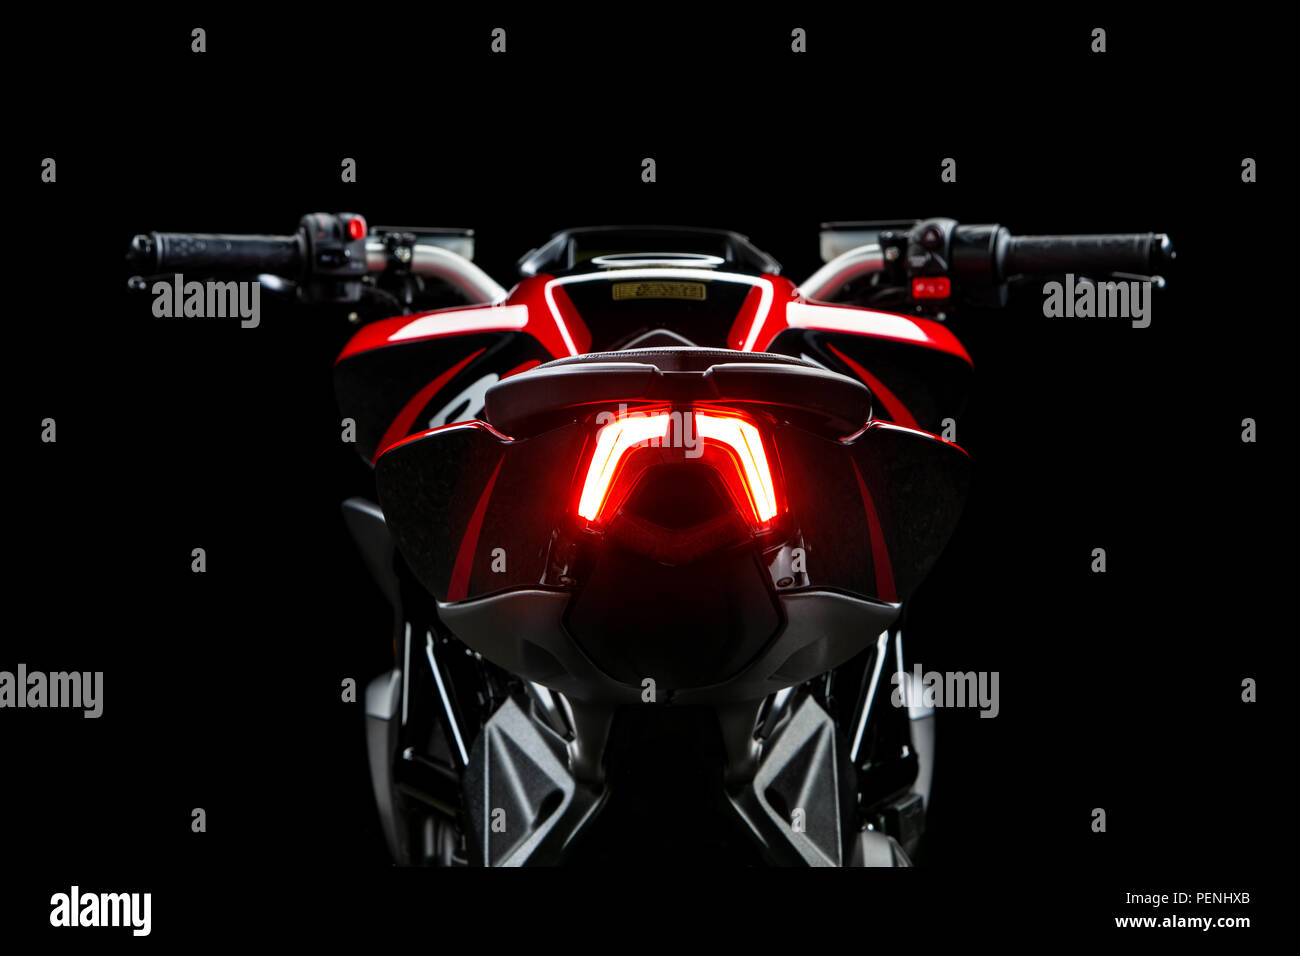 Studio Immagine di un 2018 MV Agusta Brutale moto su uno sfondo nero. Foto Stock